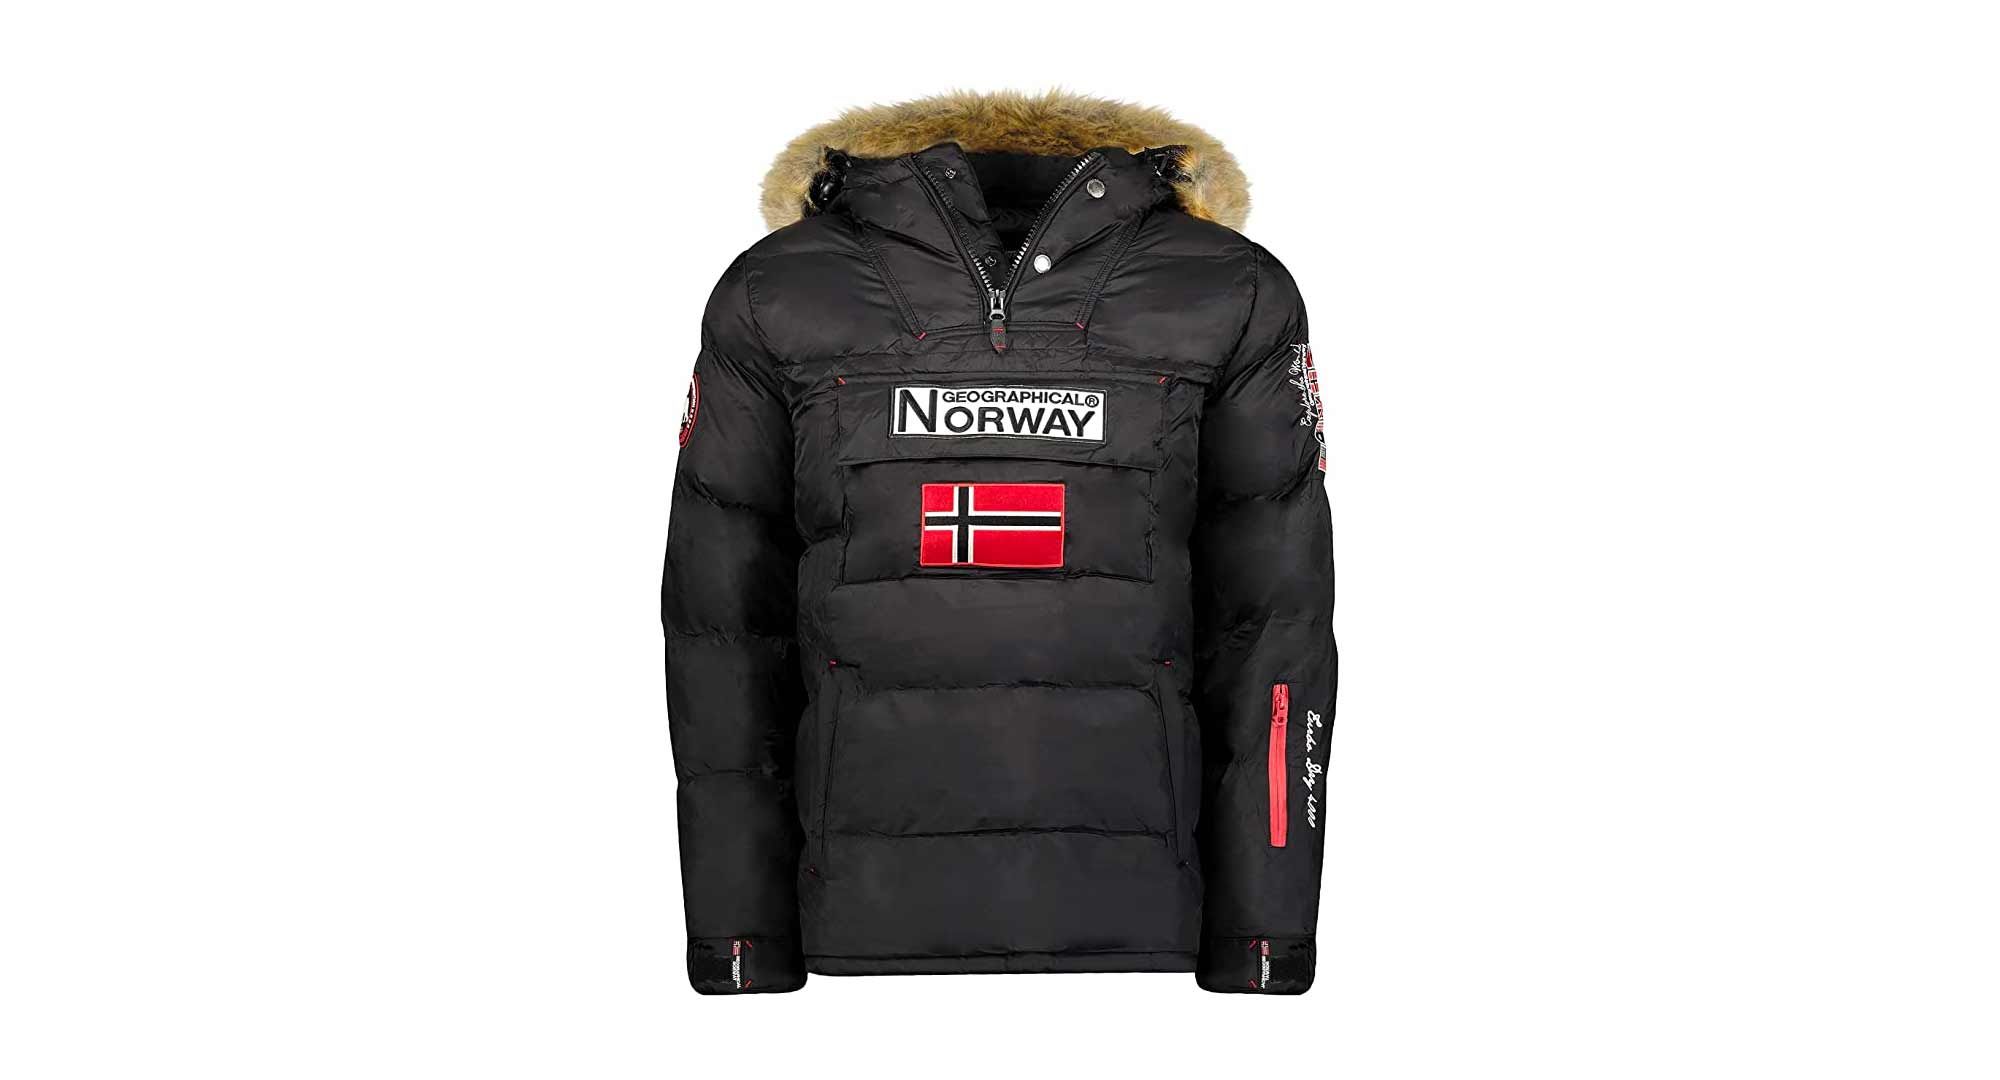 La chaqueta Geographical Norway más vendida de